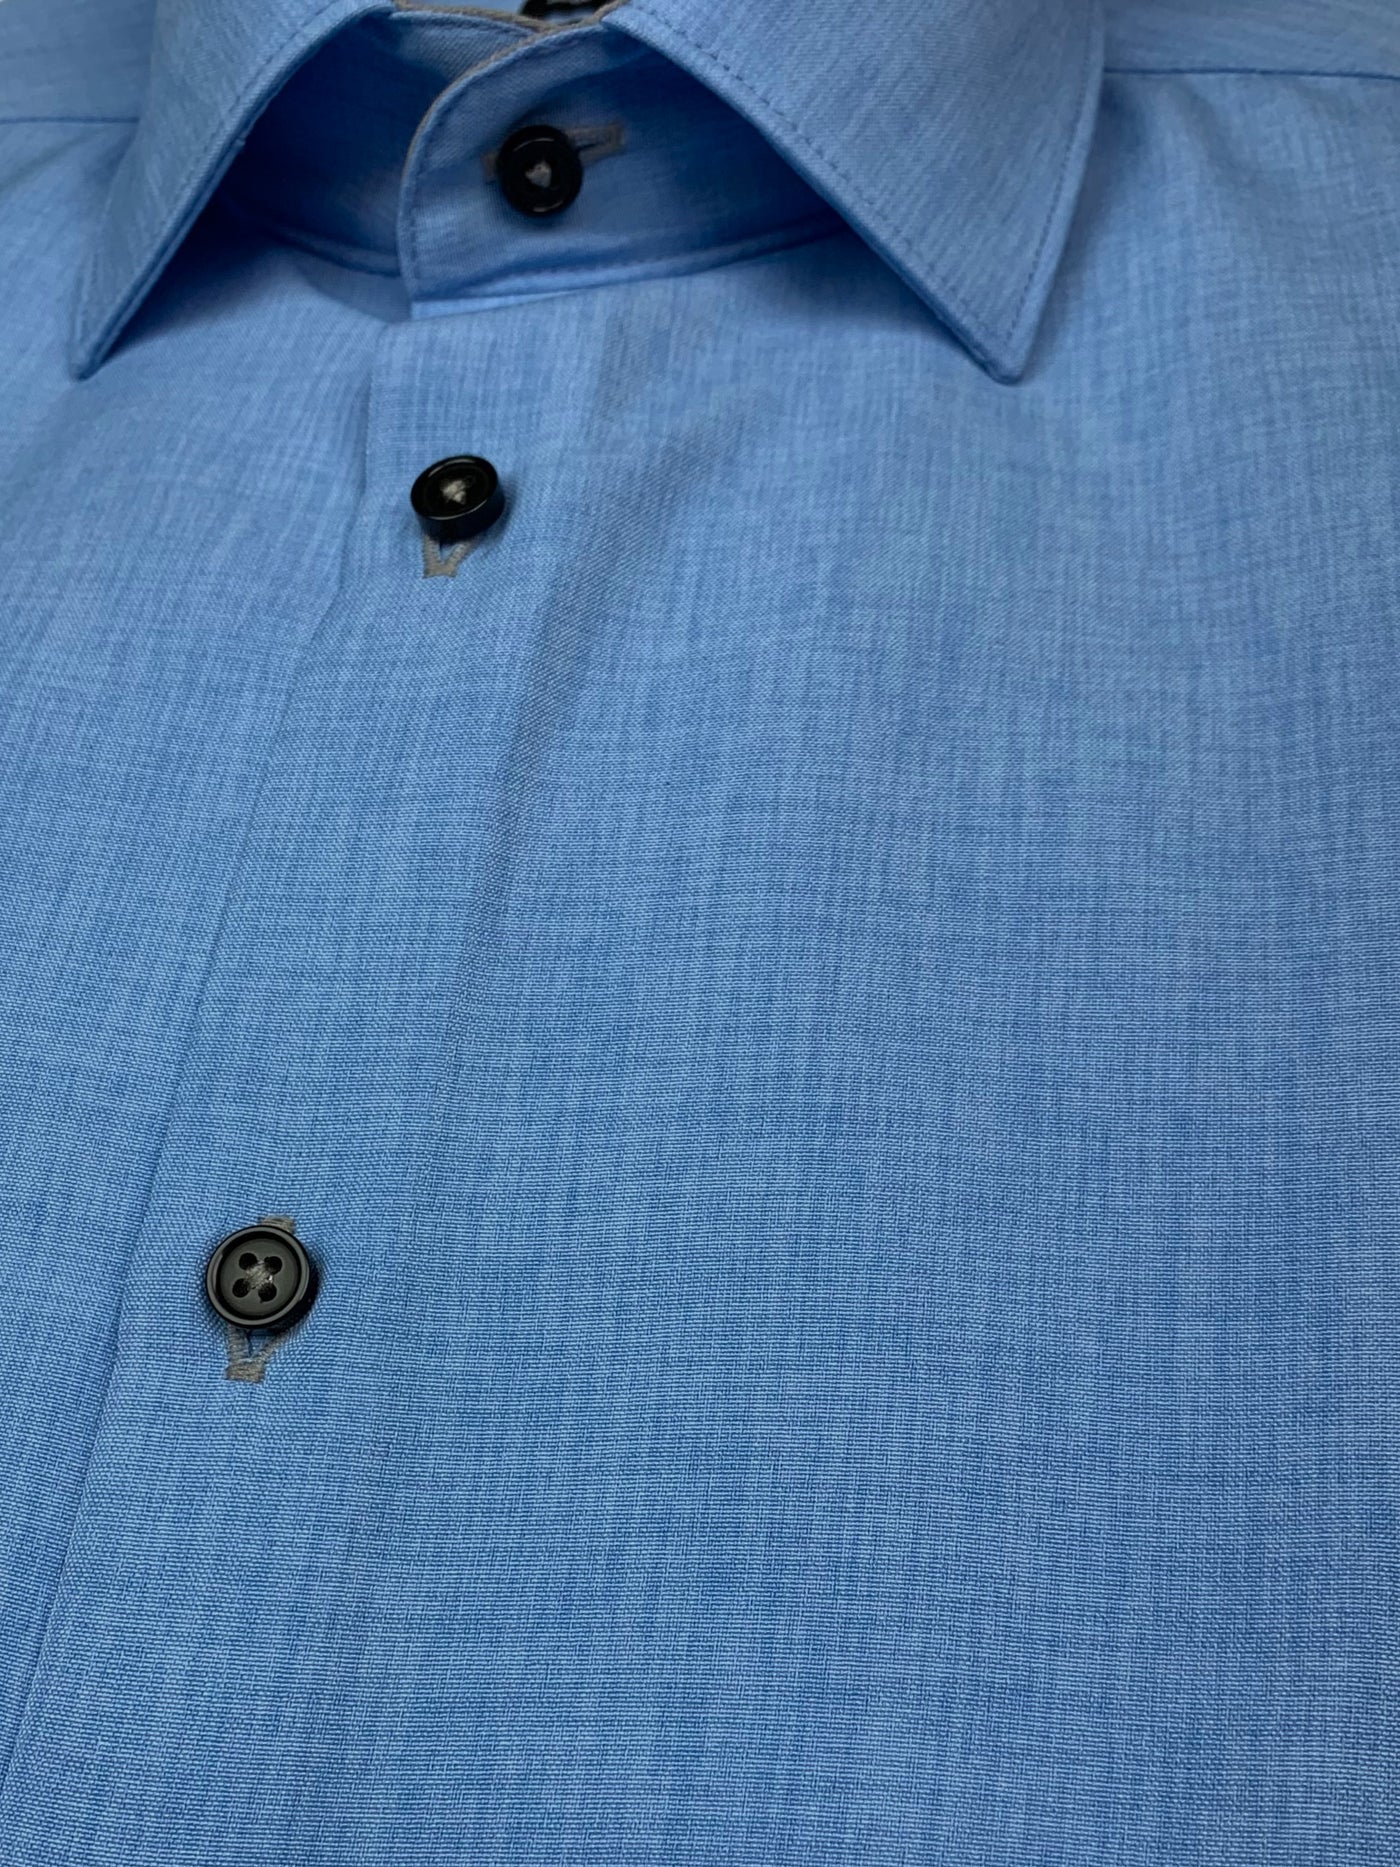 Chemise habillée microfibre bleue à manches longues coupe ajustée